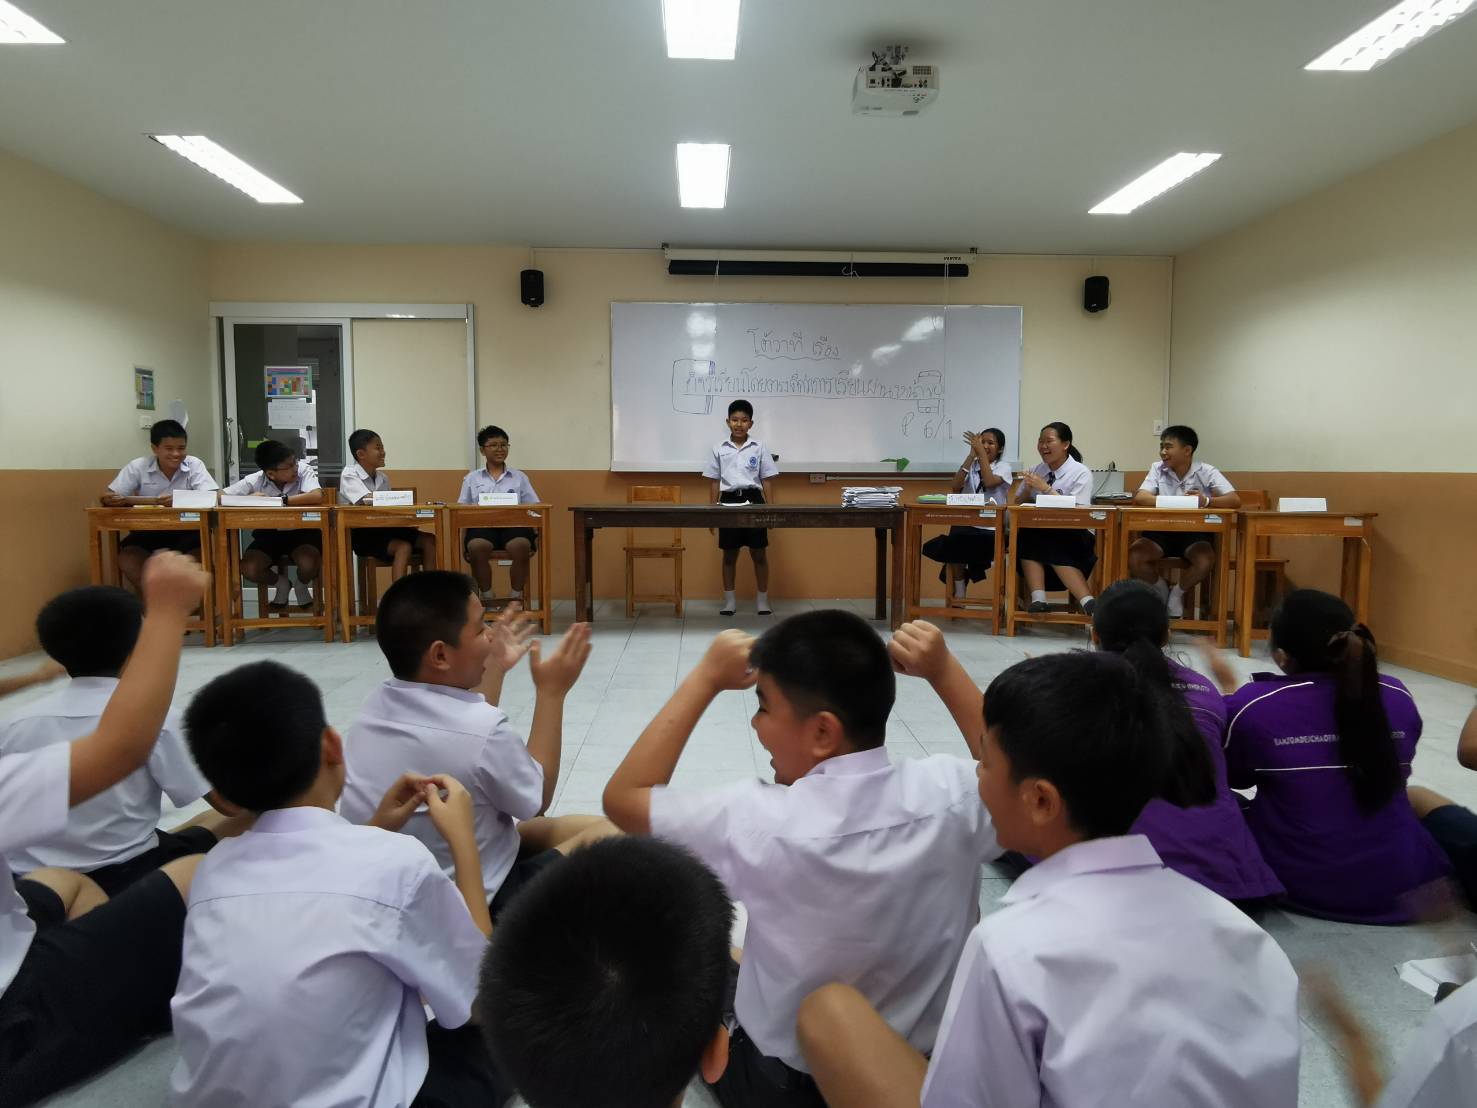 การสอนวิชาภาษาไทยในโรงเรียนสาธิตมหาวิทยาลัยราชภัฏบ้านสมเด็จเจ้าพระยา(ประถม)  : ทักษะการเรียนรู้ในศตวรรษที่ ๒๑